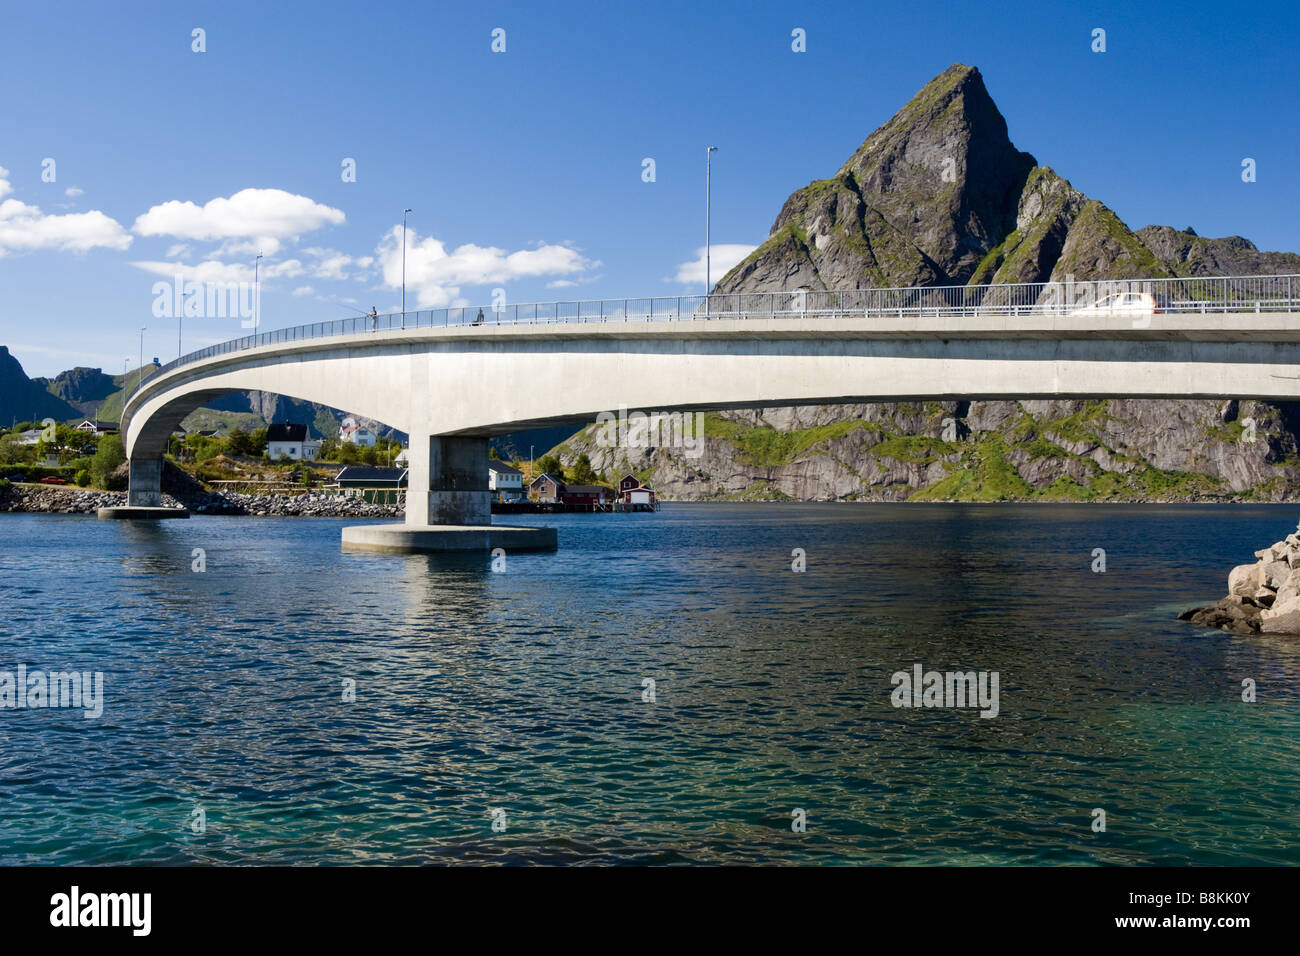 Pont entre l'Sakrisøy et Andøy (Kvalvika), Moskenesøya, Lofoten, Nordland, Norvège, Scandinavie Banque D'Images